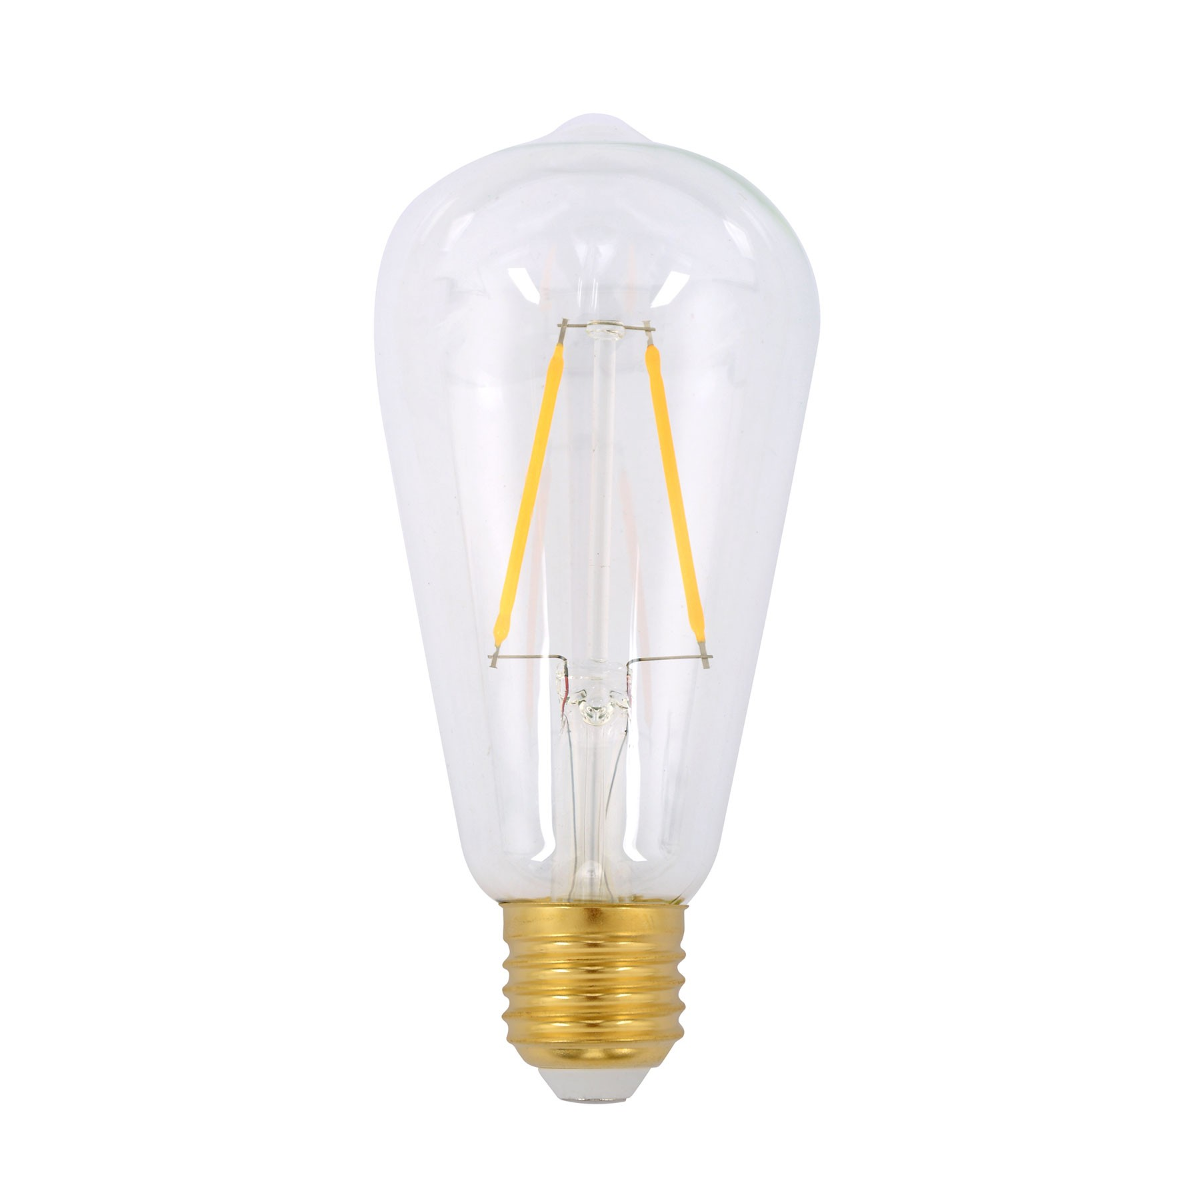 15009L ST64 Pear Shaped LED Lamp 2.5W